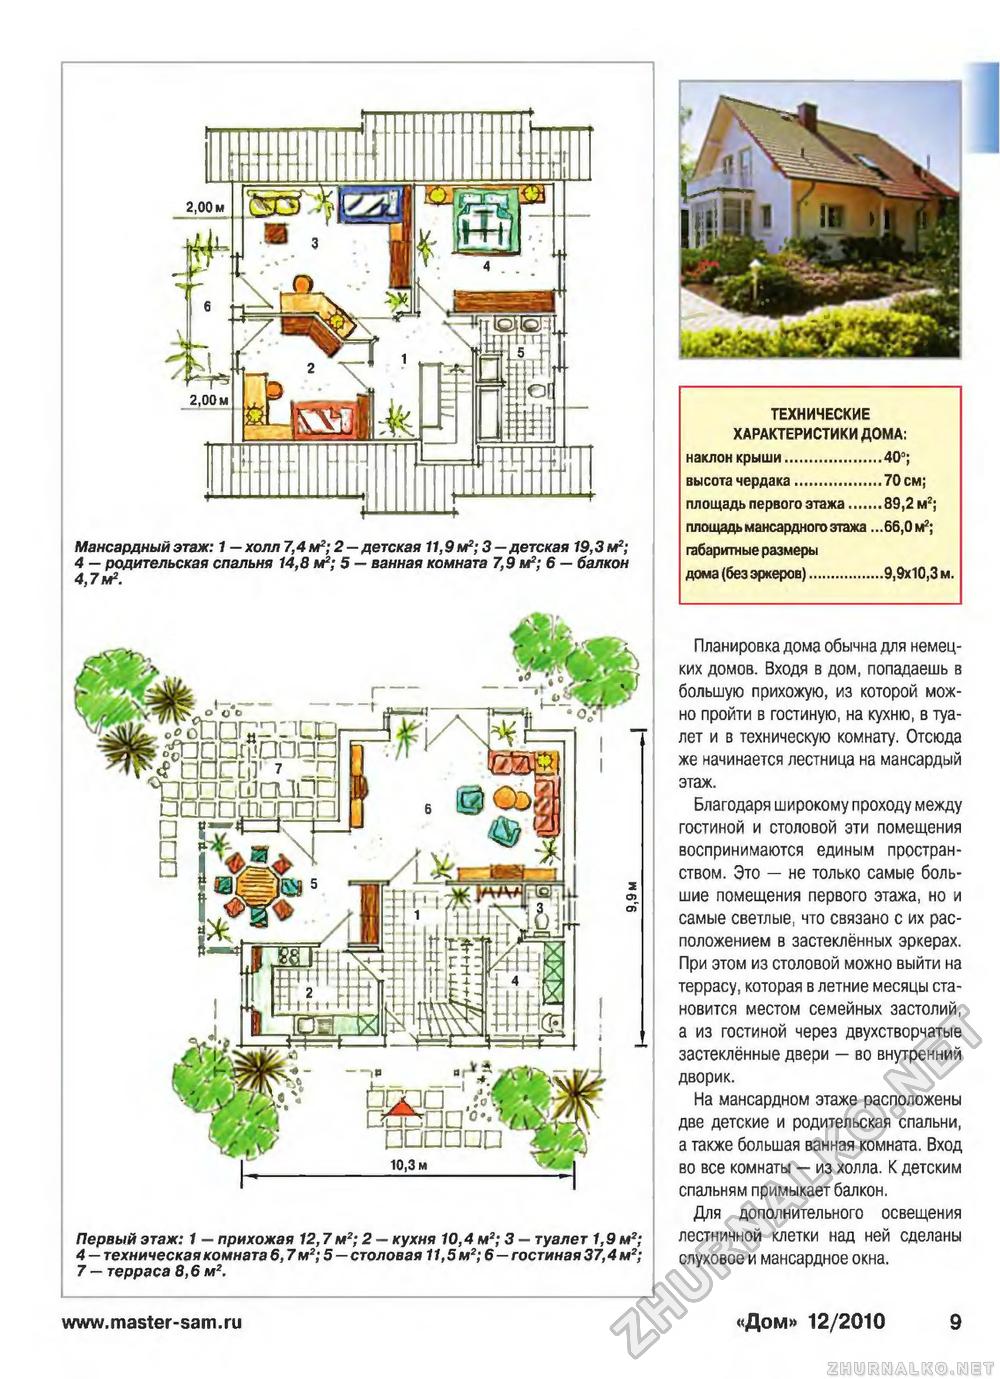 Дом 2010-12, страница 9